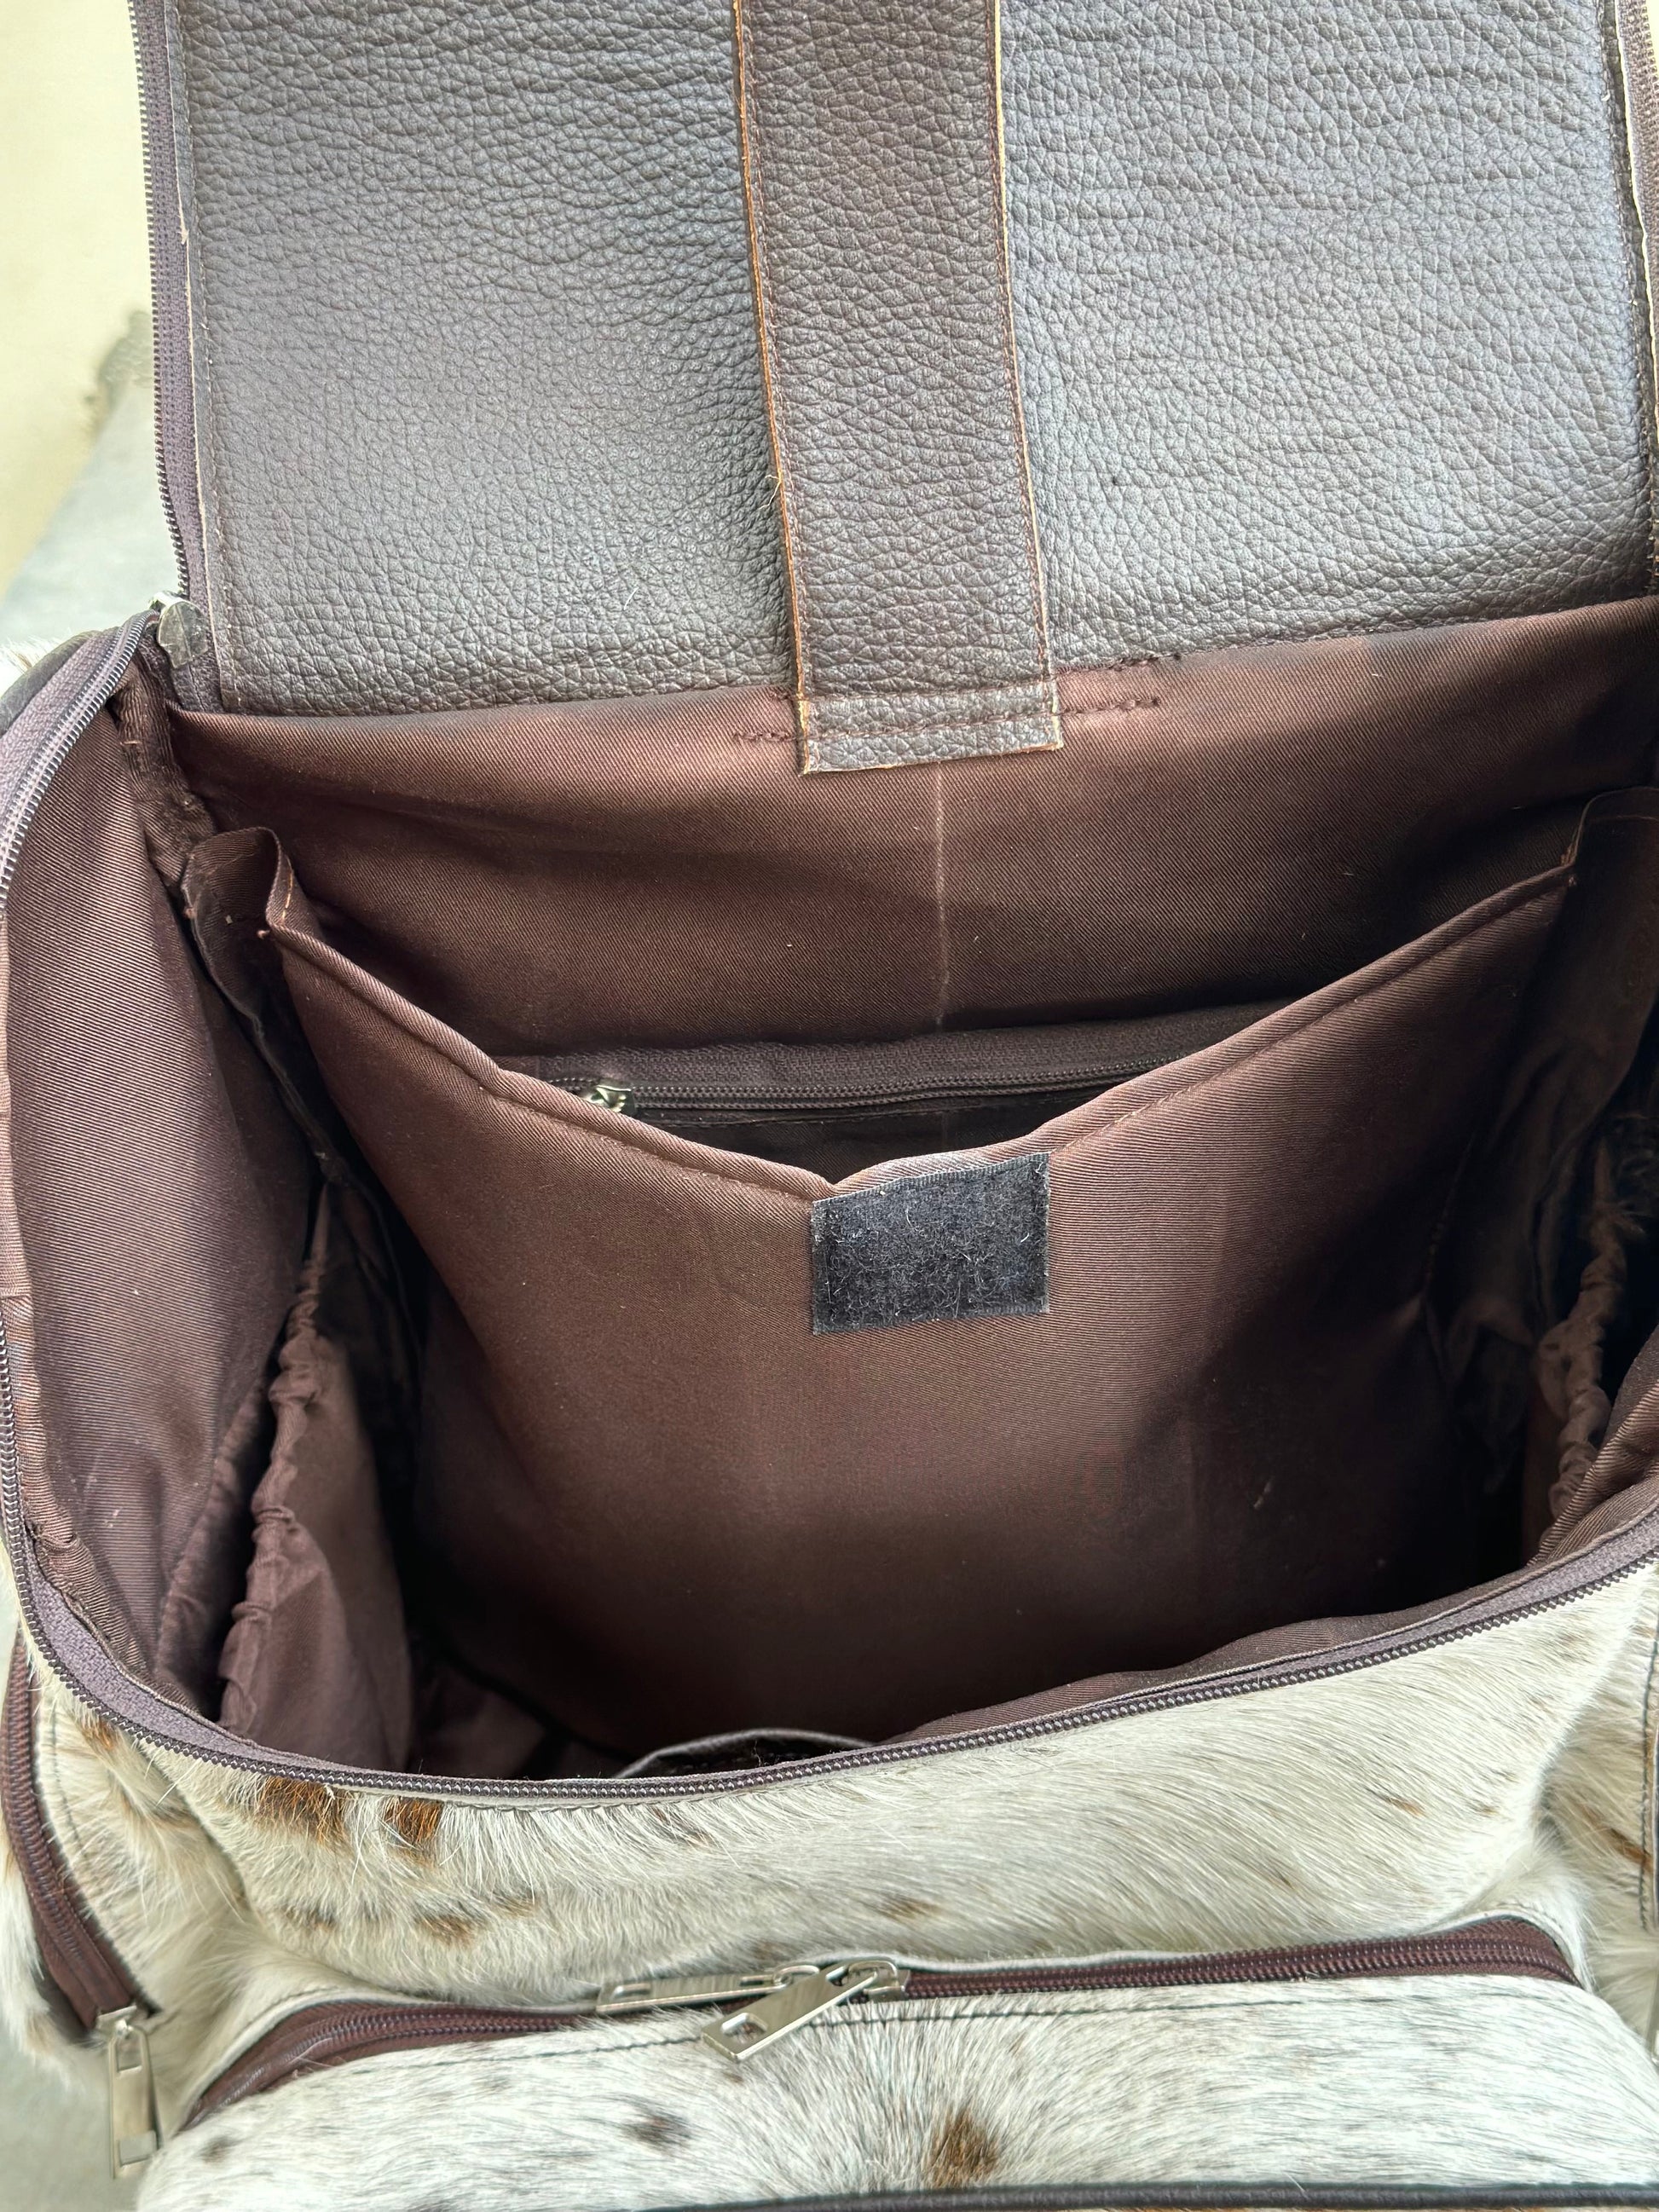 weekender bag personalize bag customize backpack laptop bag leather backpack cowhide bag backpack diaper bag backpack genuine leather bag backpack large backpack baby bag backpack unisex bag